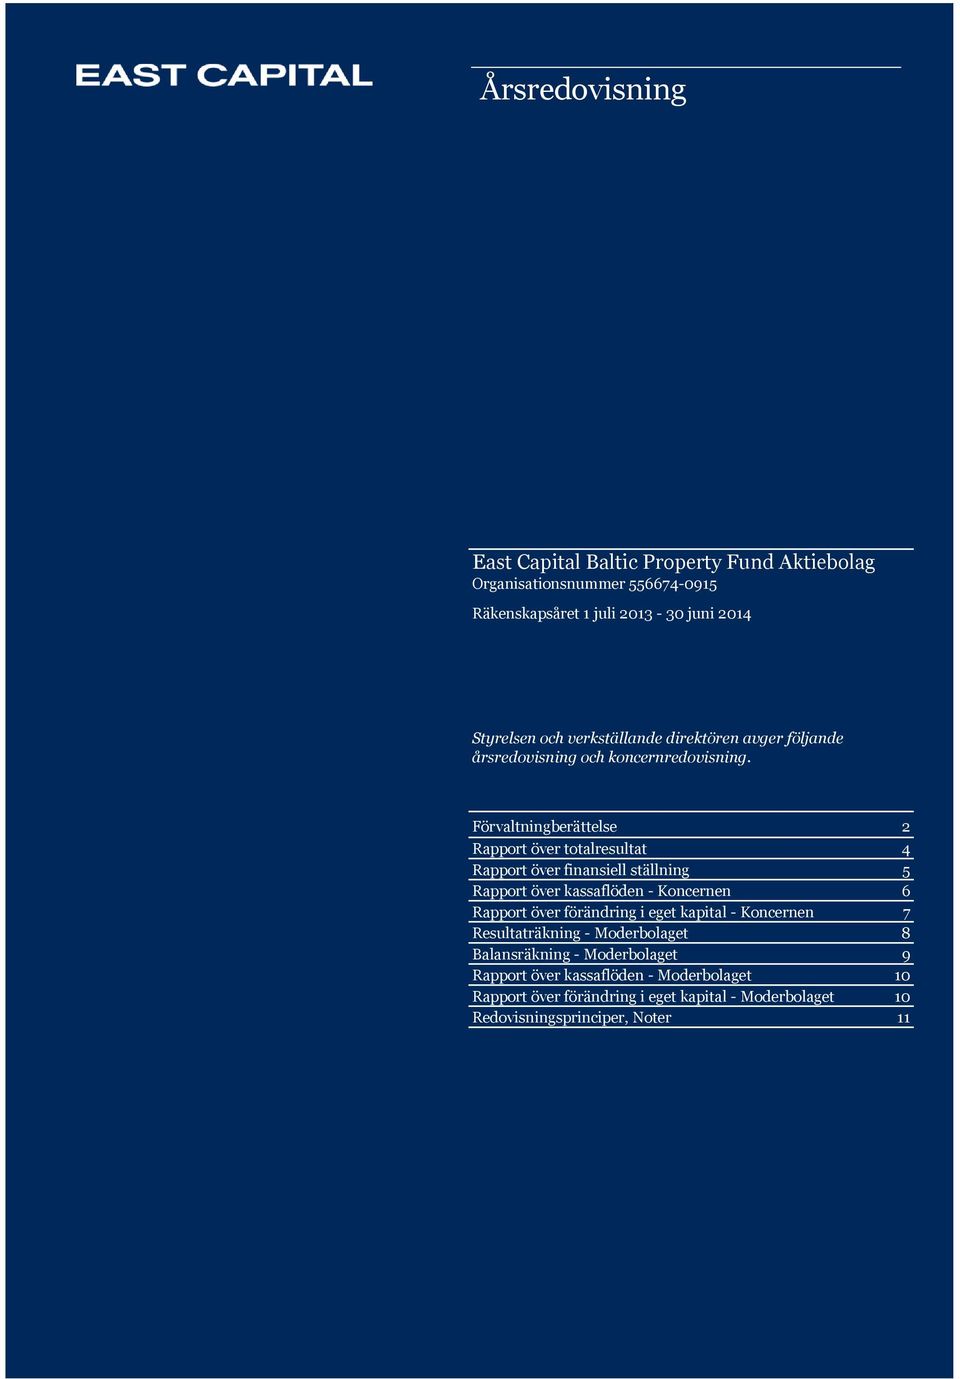 Förvaltningberättelse 2 Rapport över totalresultat 4 Rapport över finansiell ställning 5 Rapport över kassaflöden - 6 Rapport över förändring i